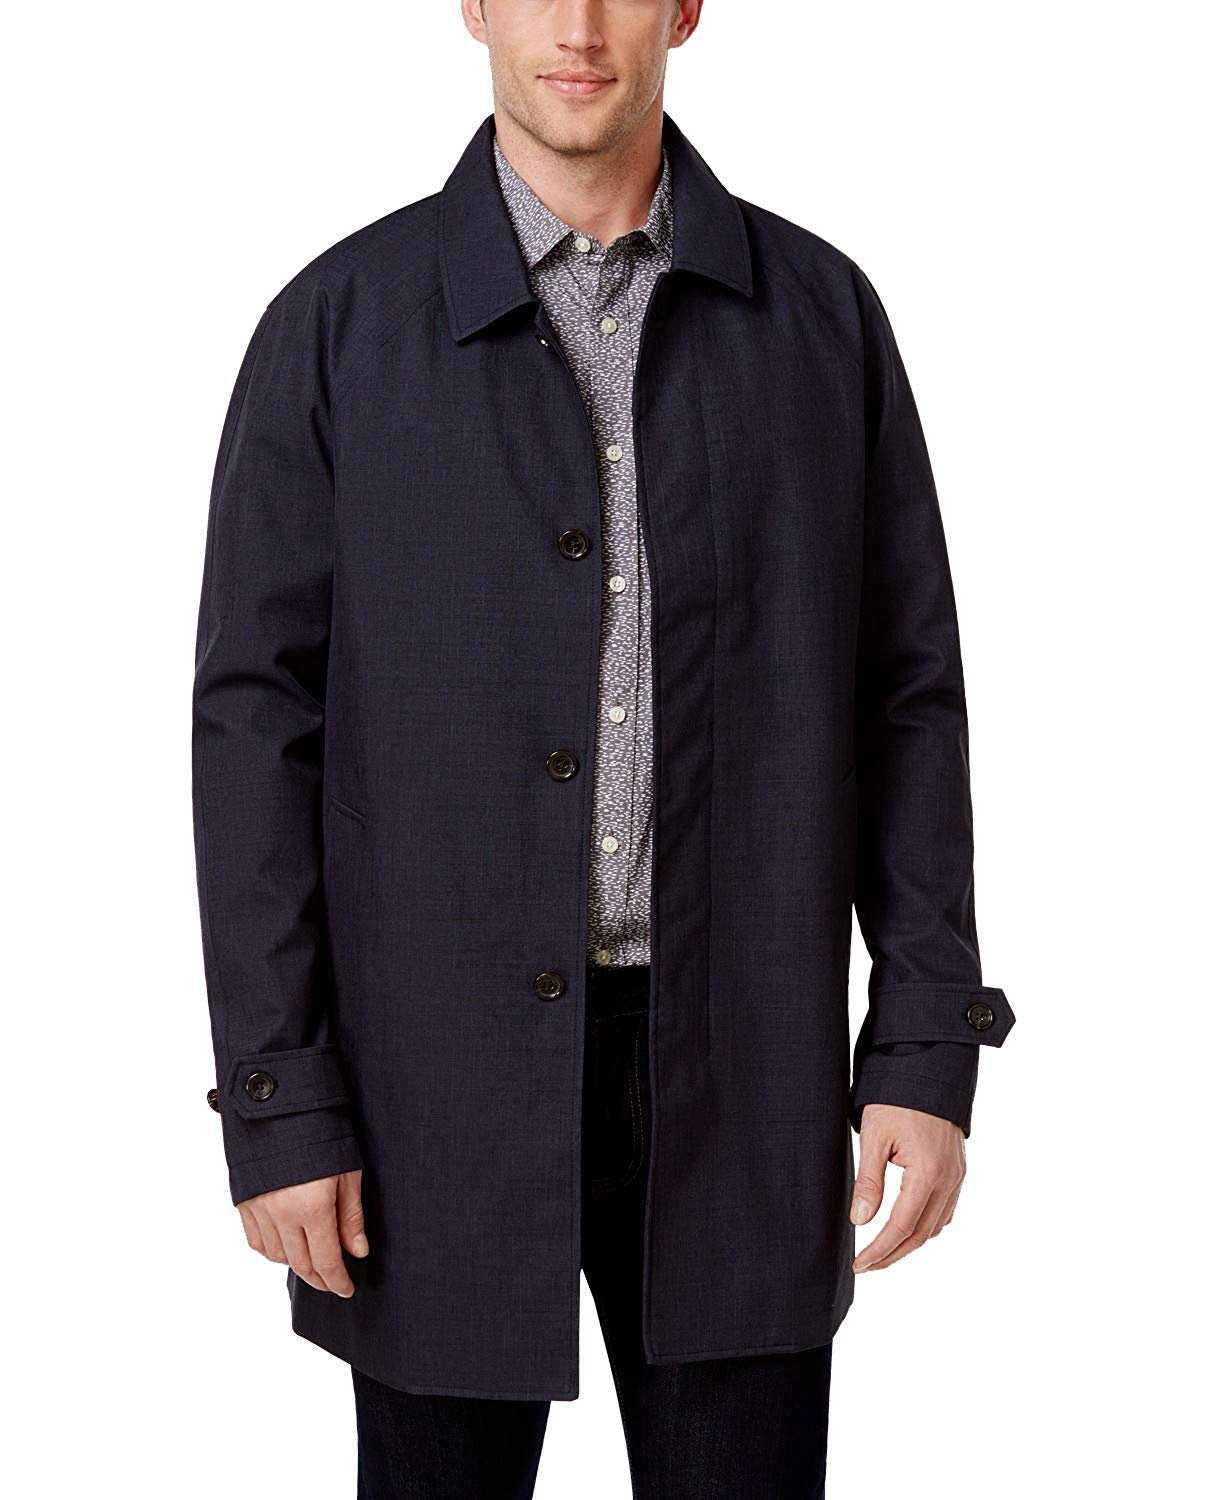 Michael Kors Men's Collin Slim Fit Rain Coat | eBay